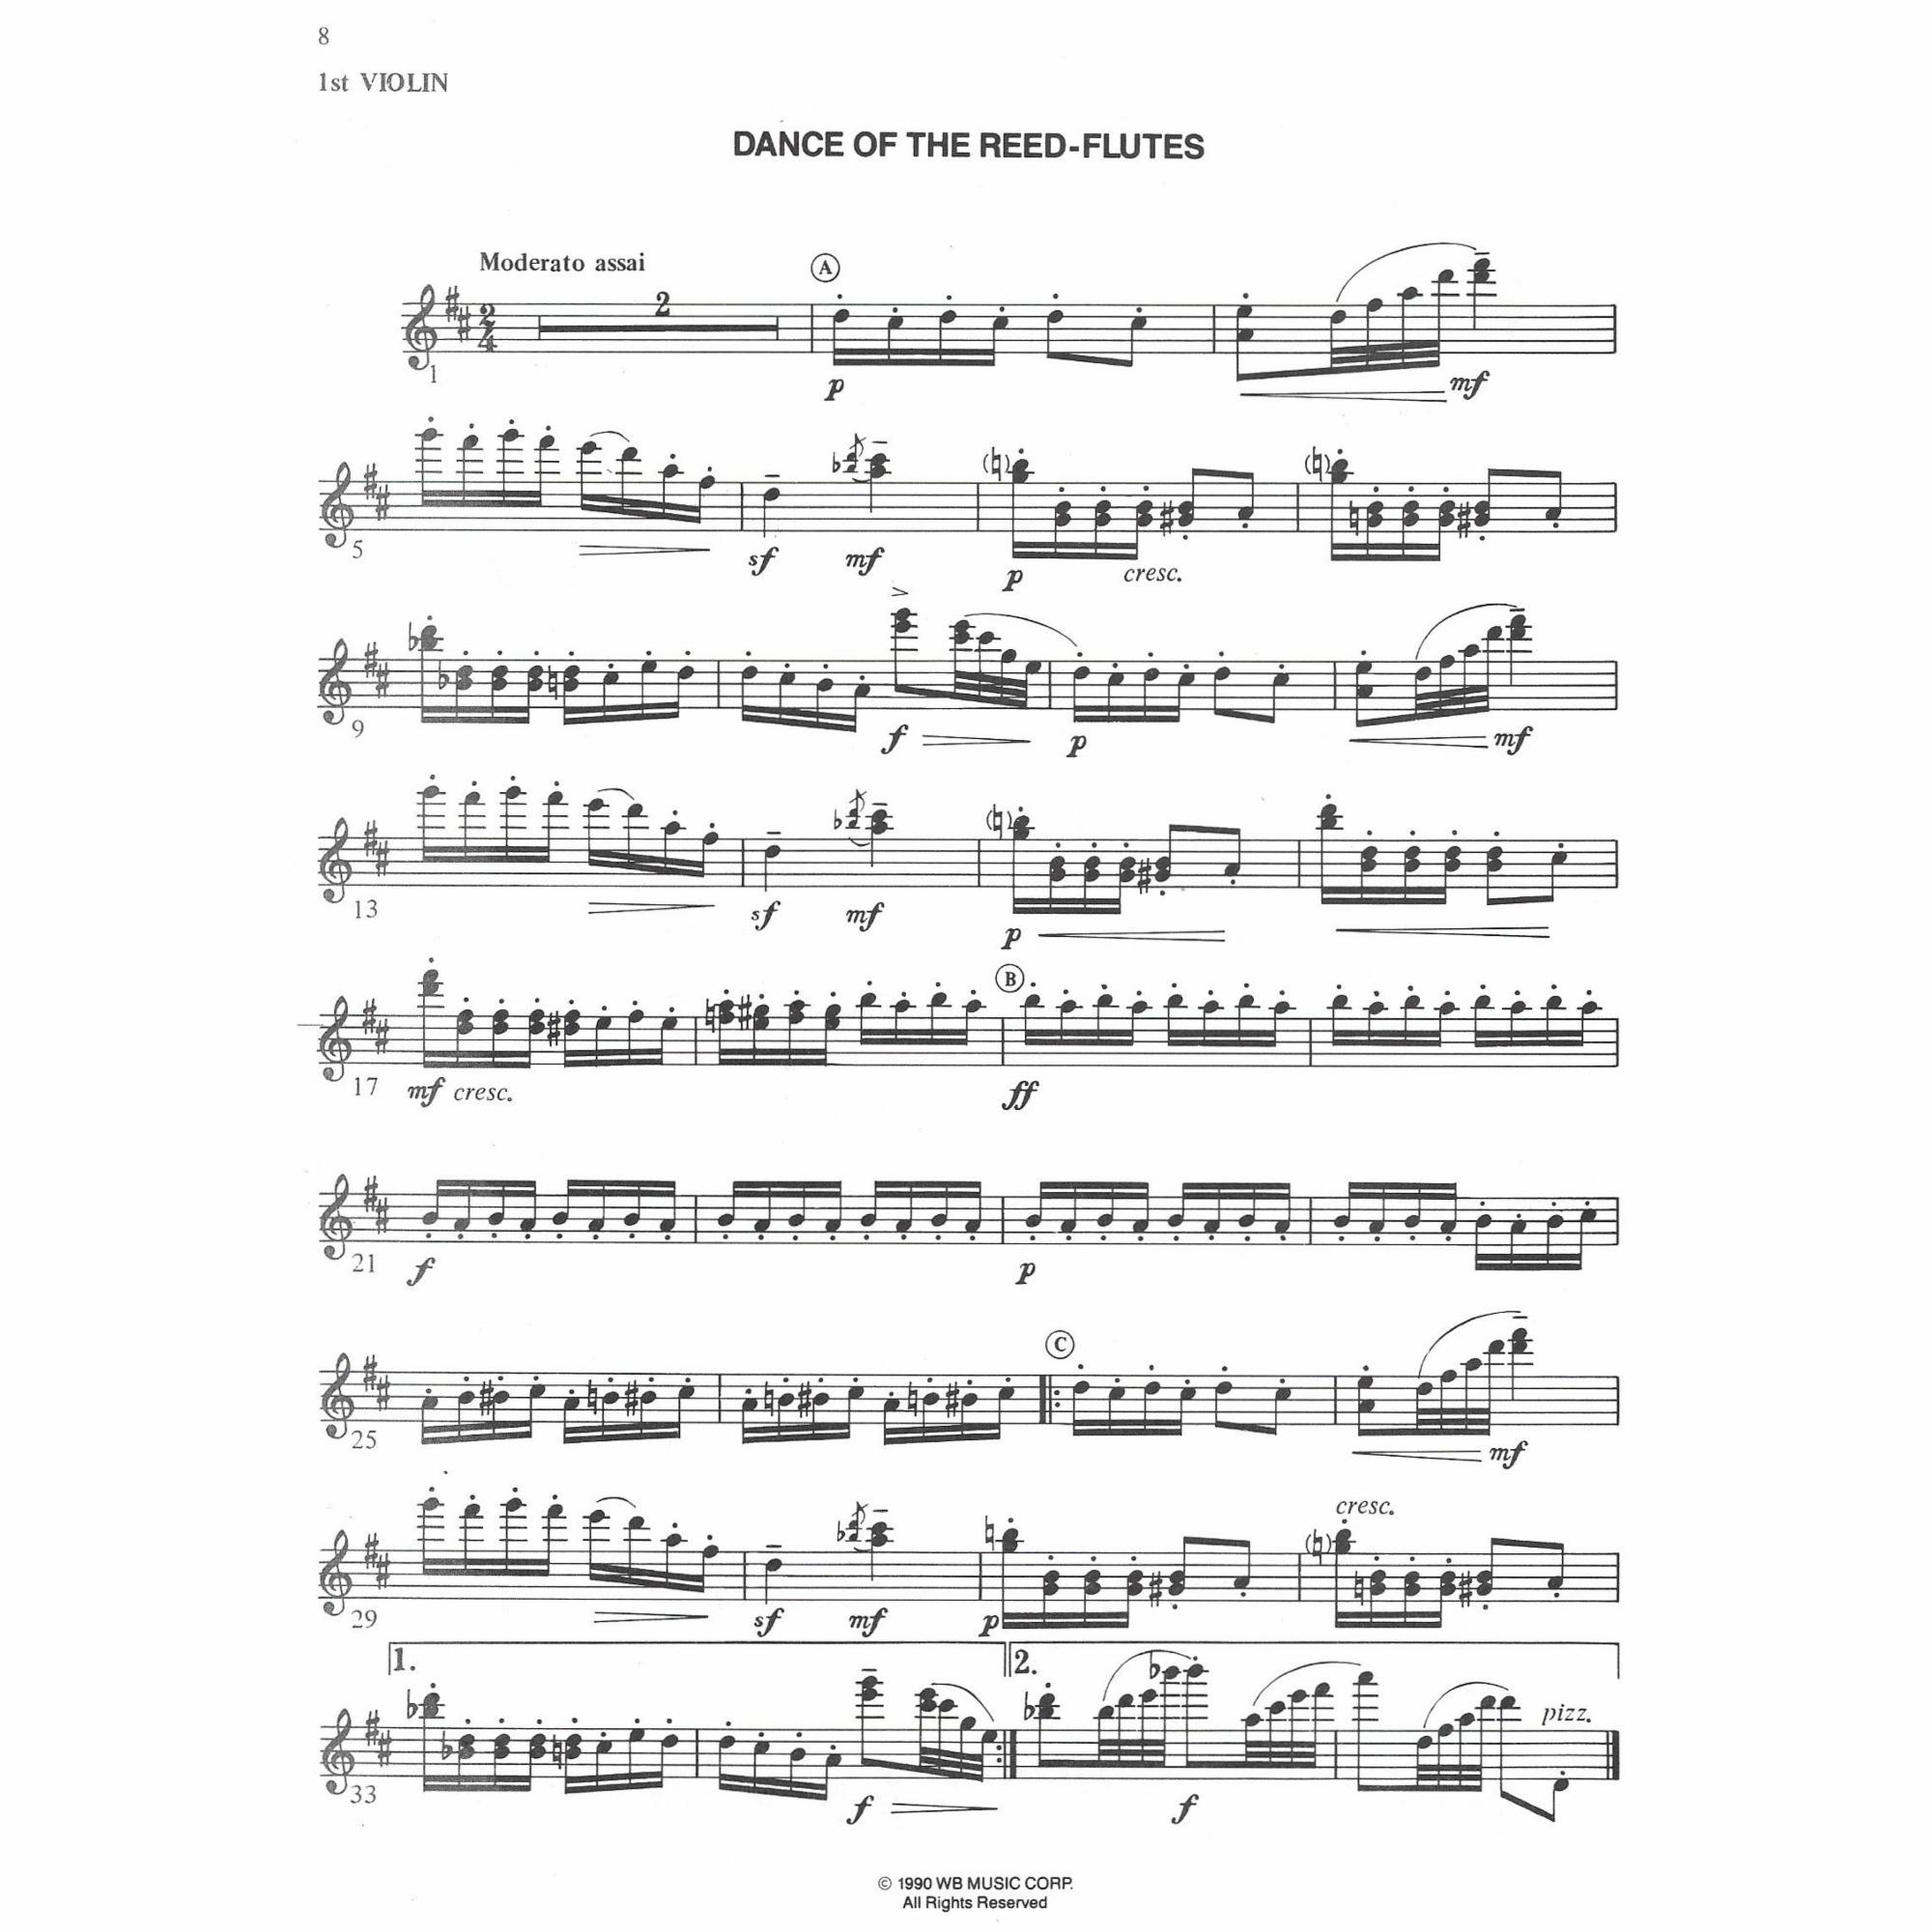 Sample: Violin I (Pg. 8)